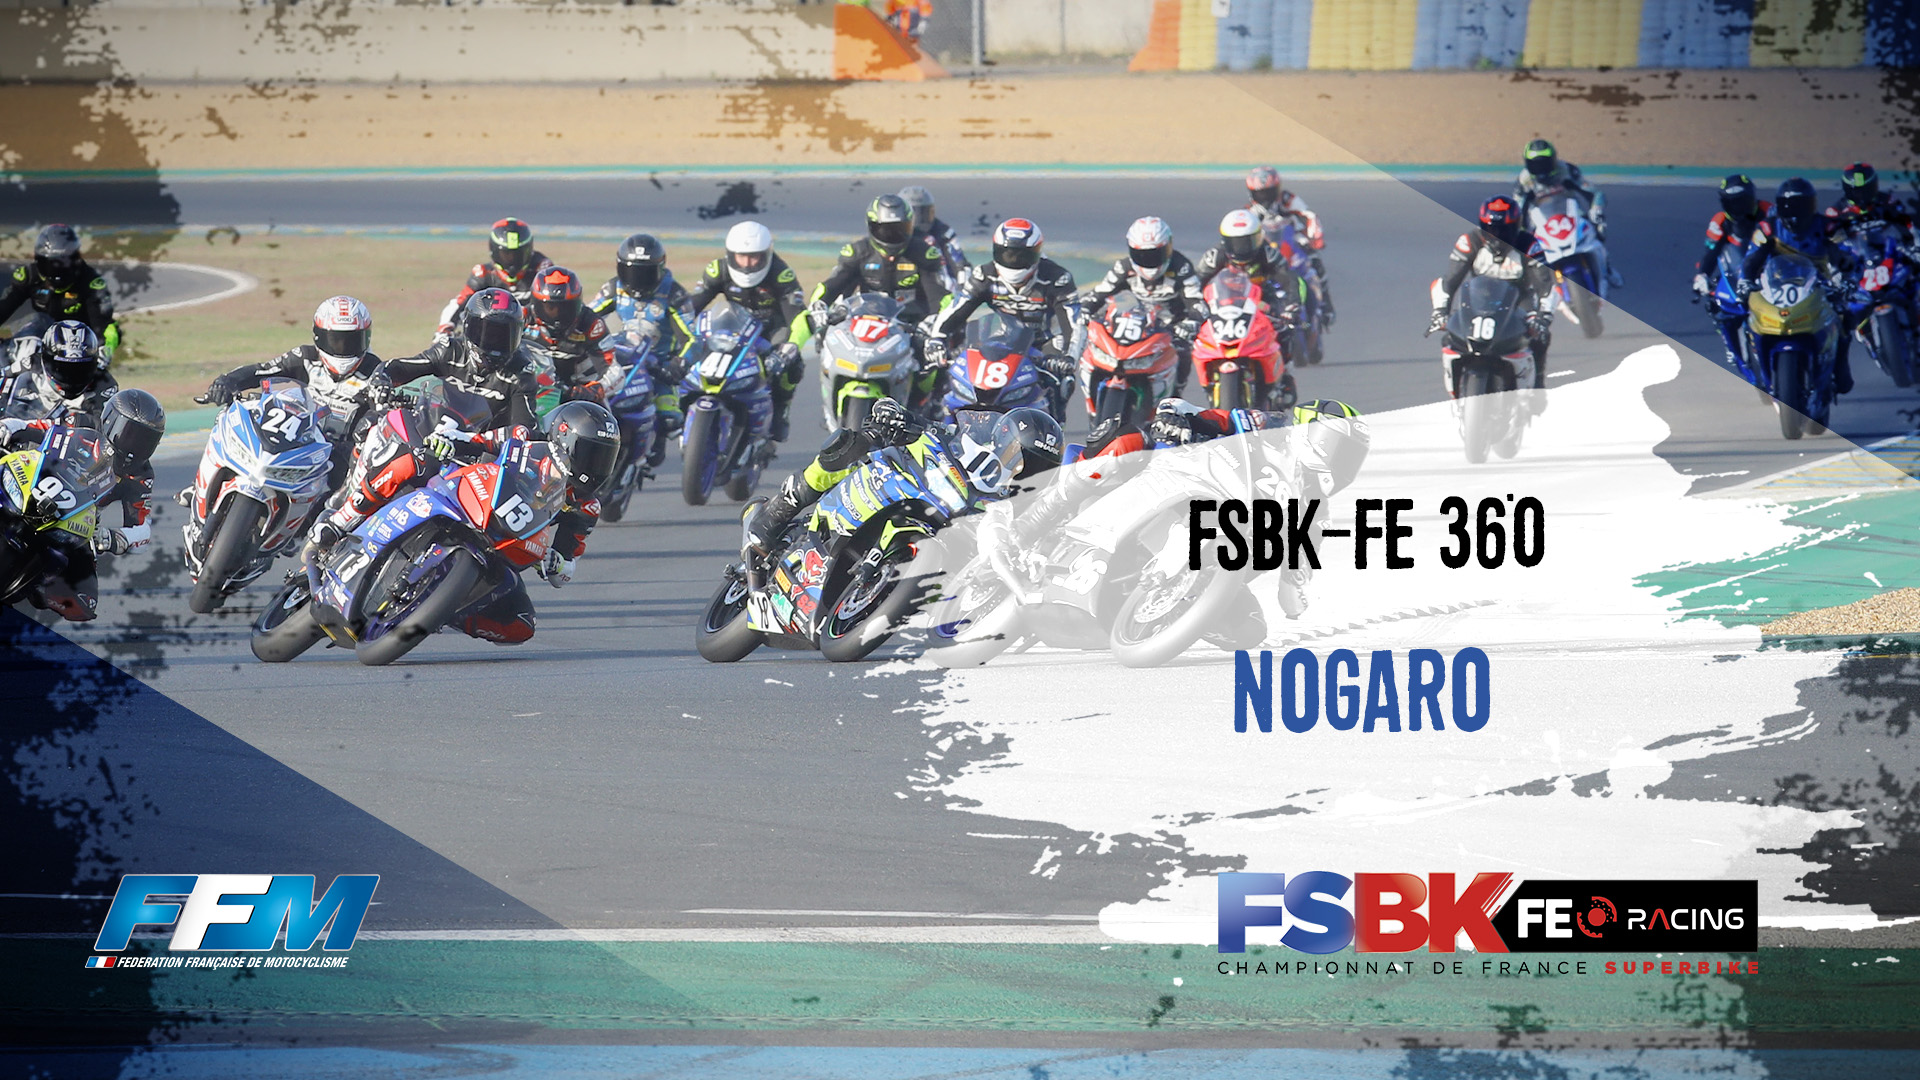 FSBK-FE 360 Nogaro